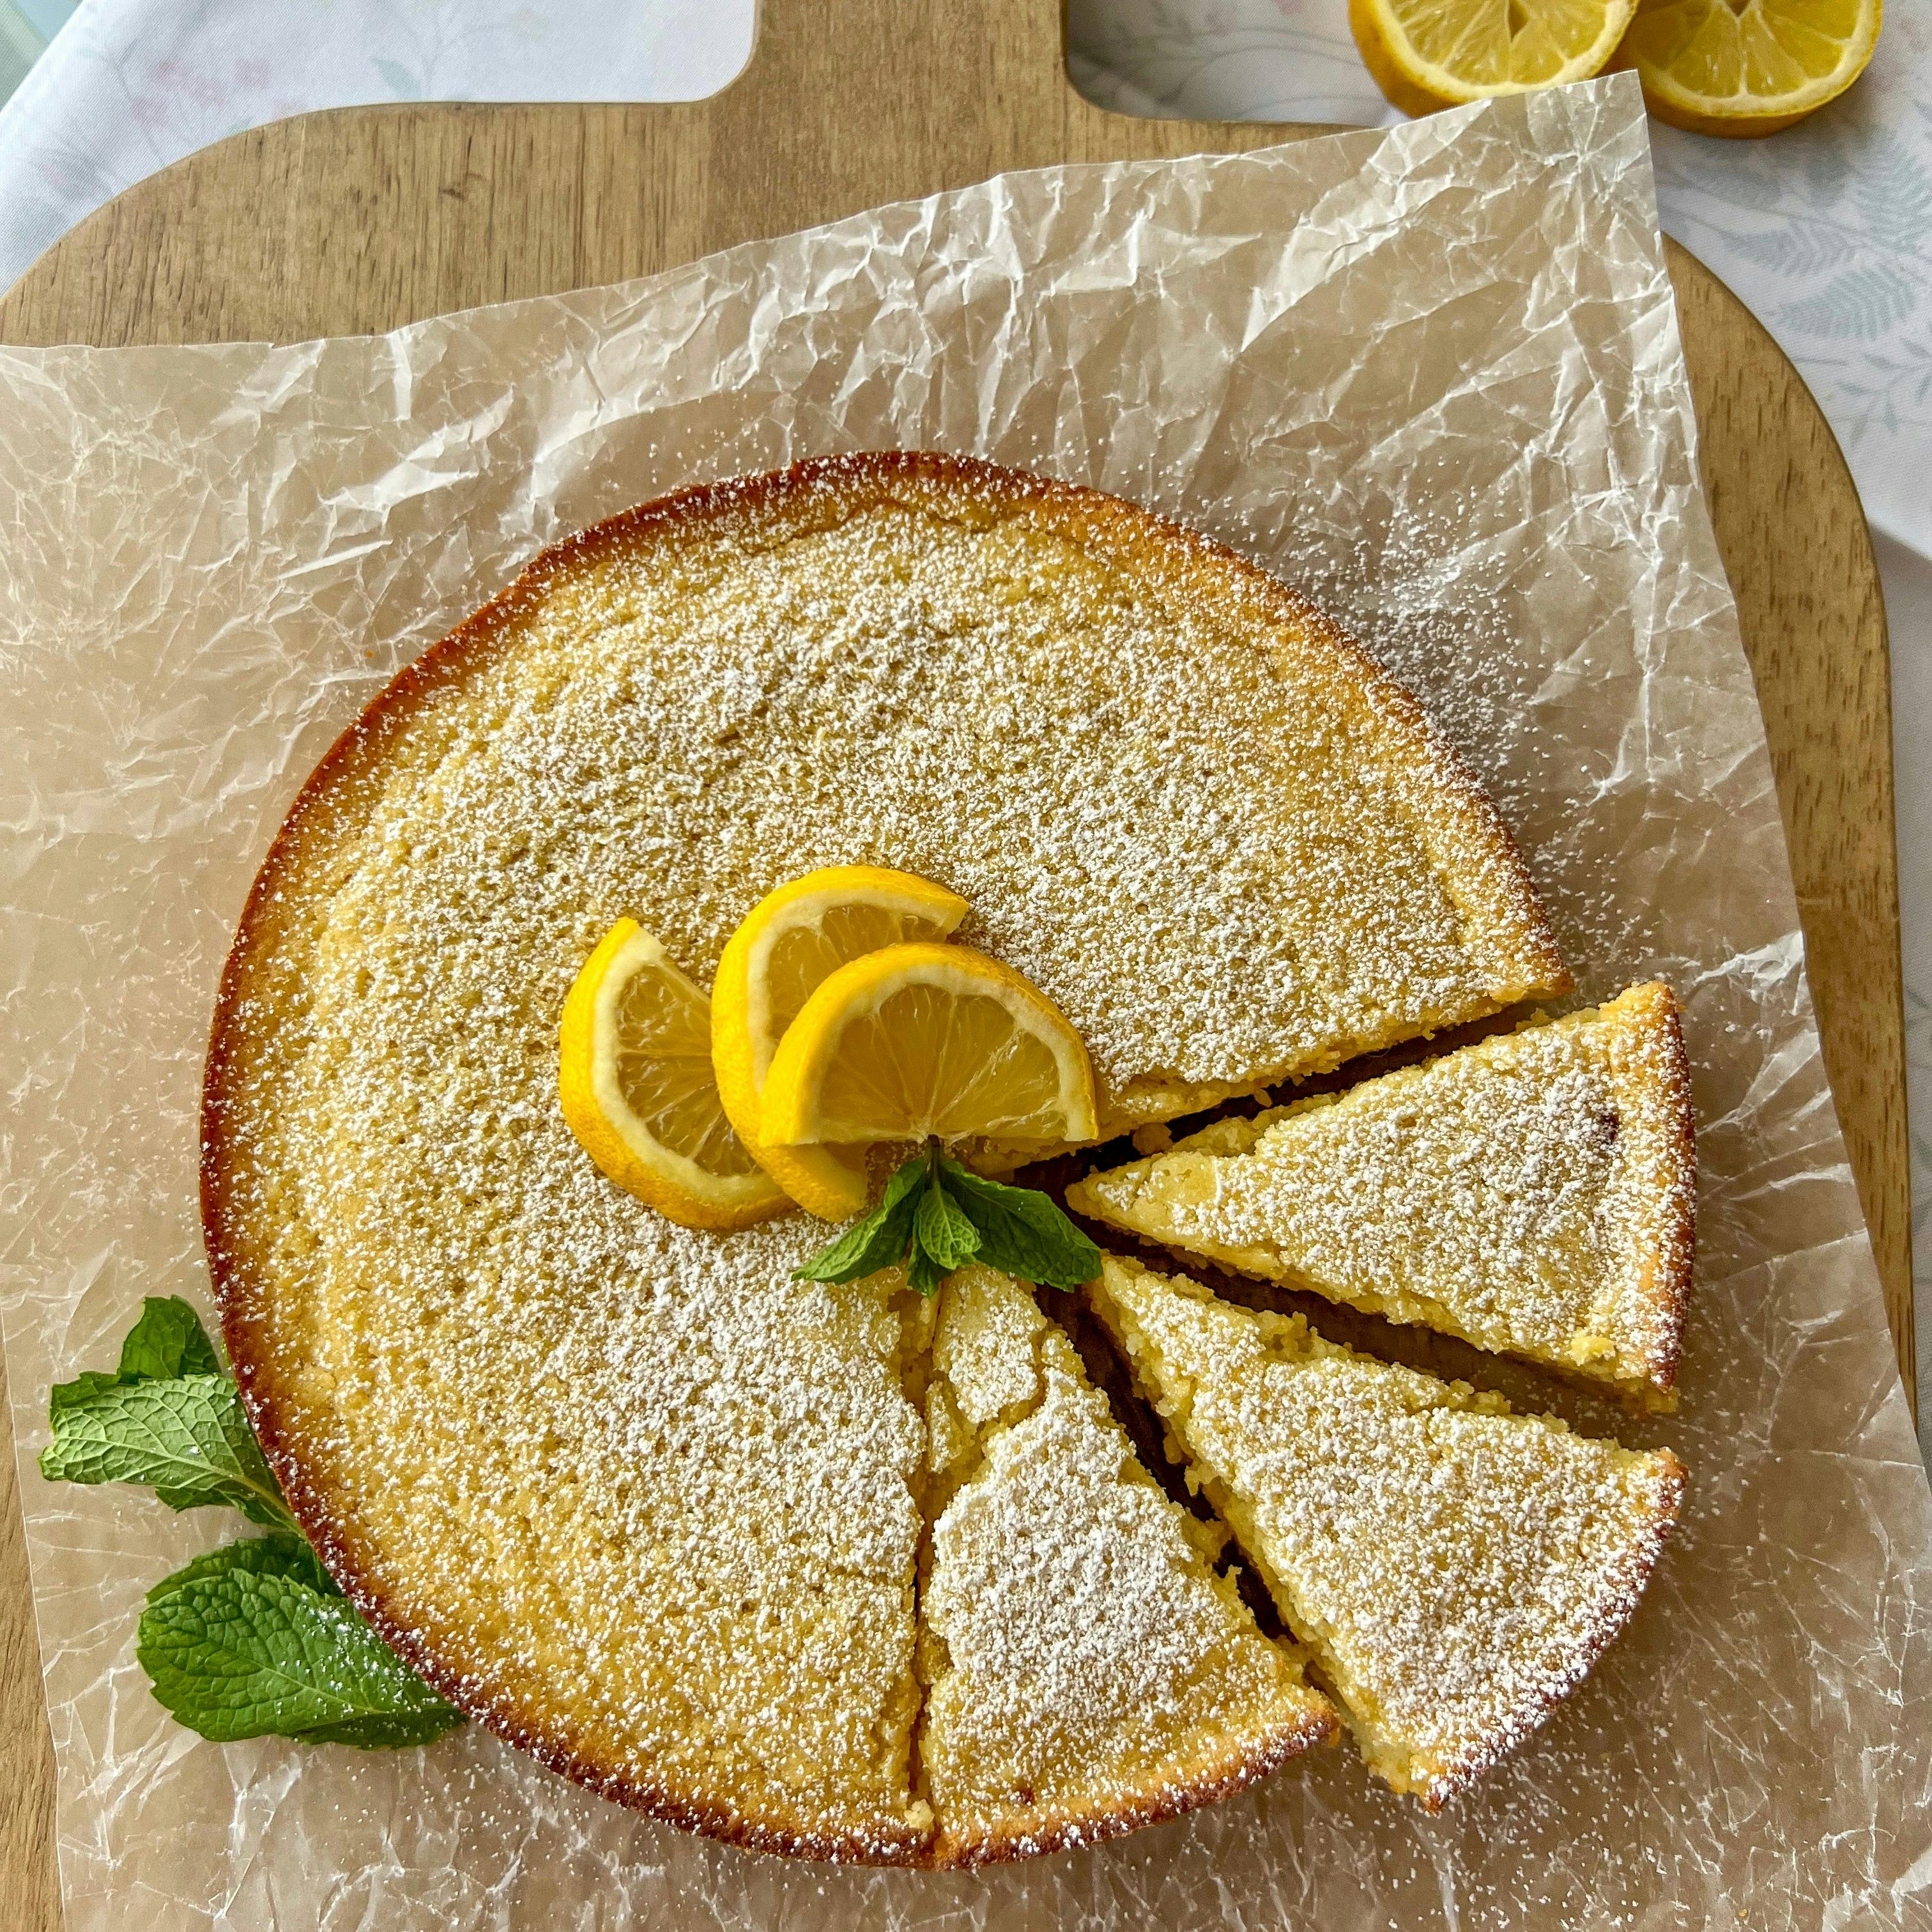 Picture for Lemon ricotta olive oil cake